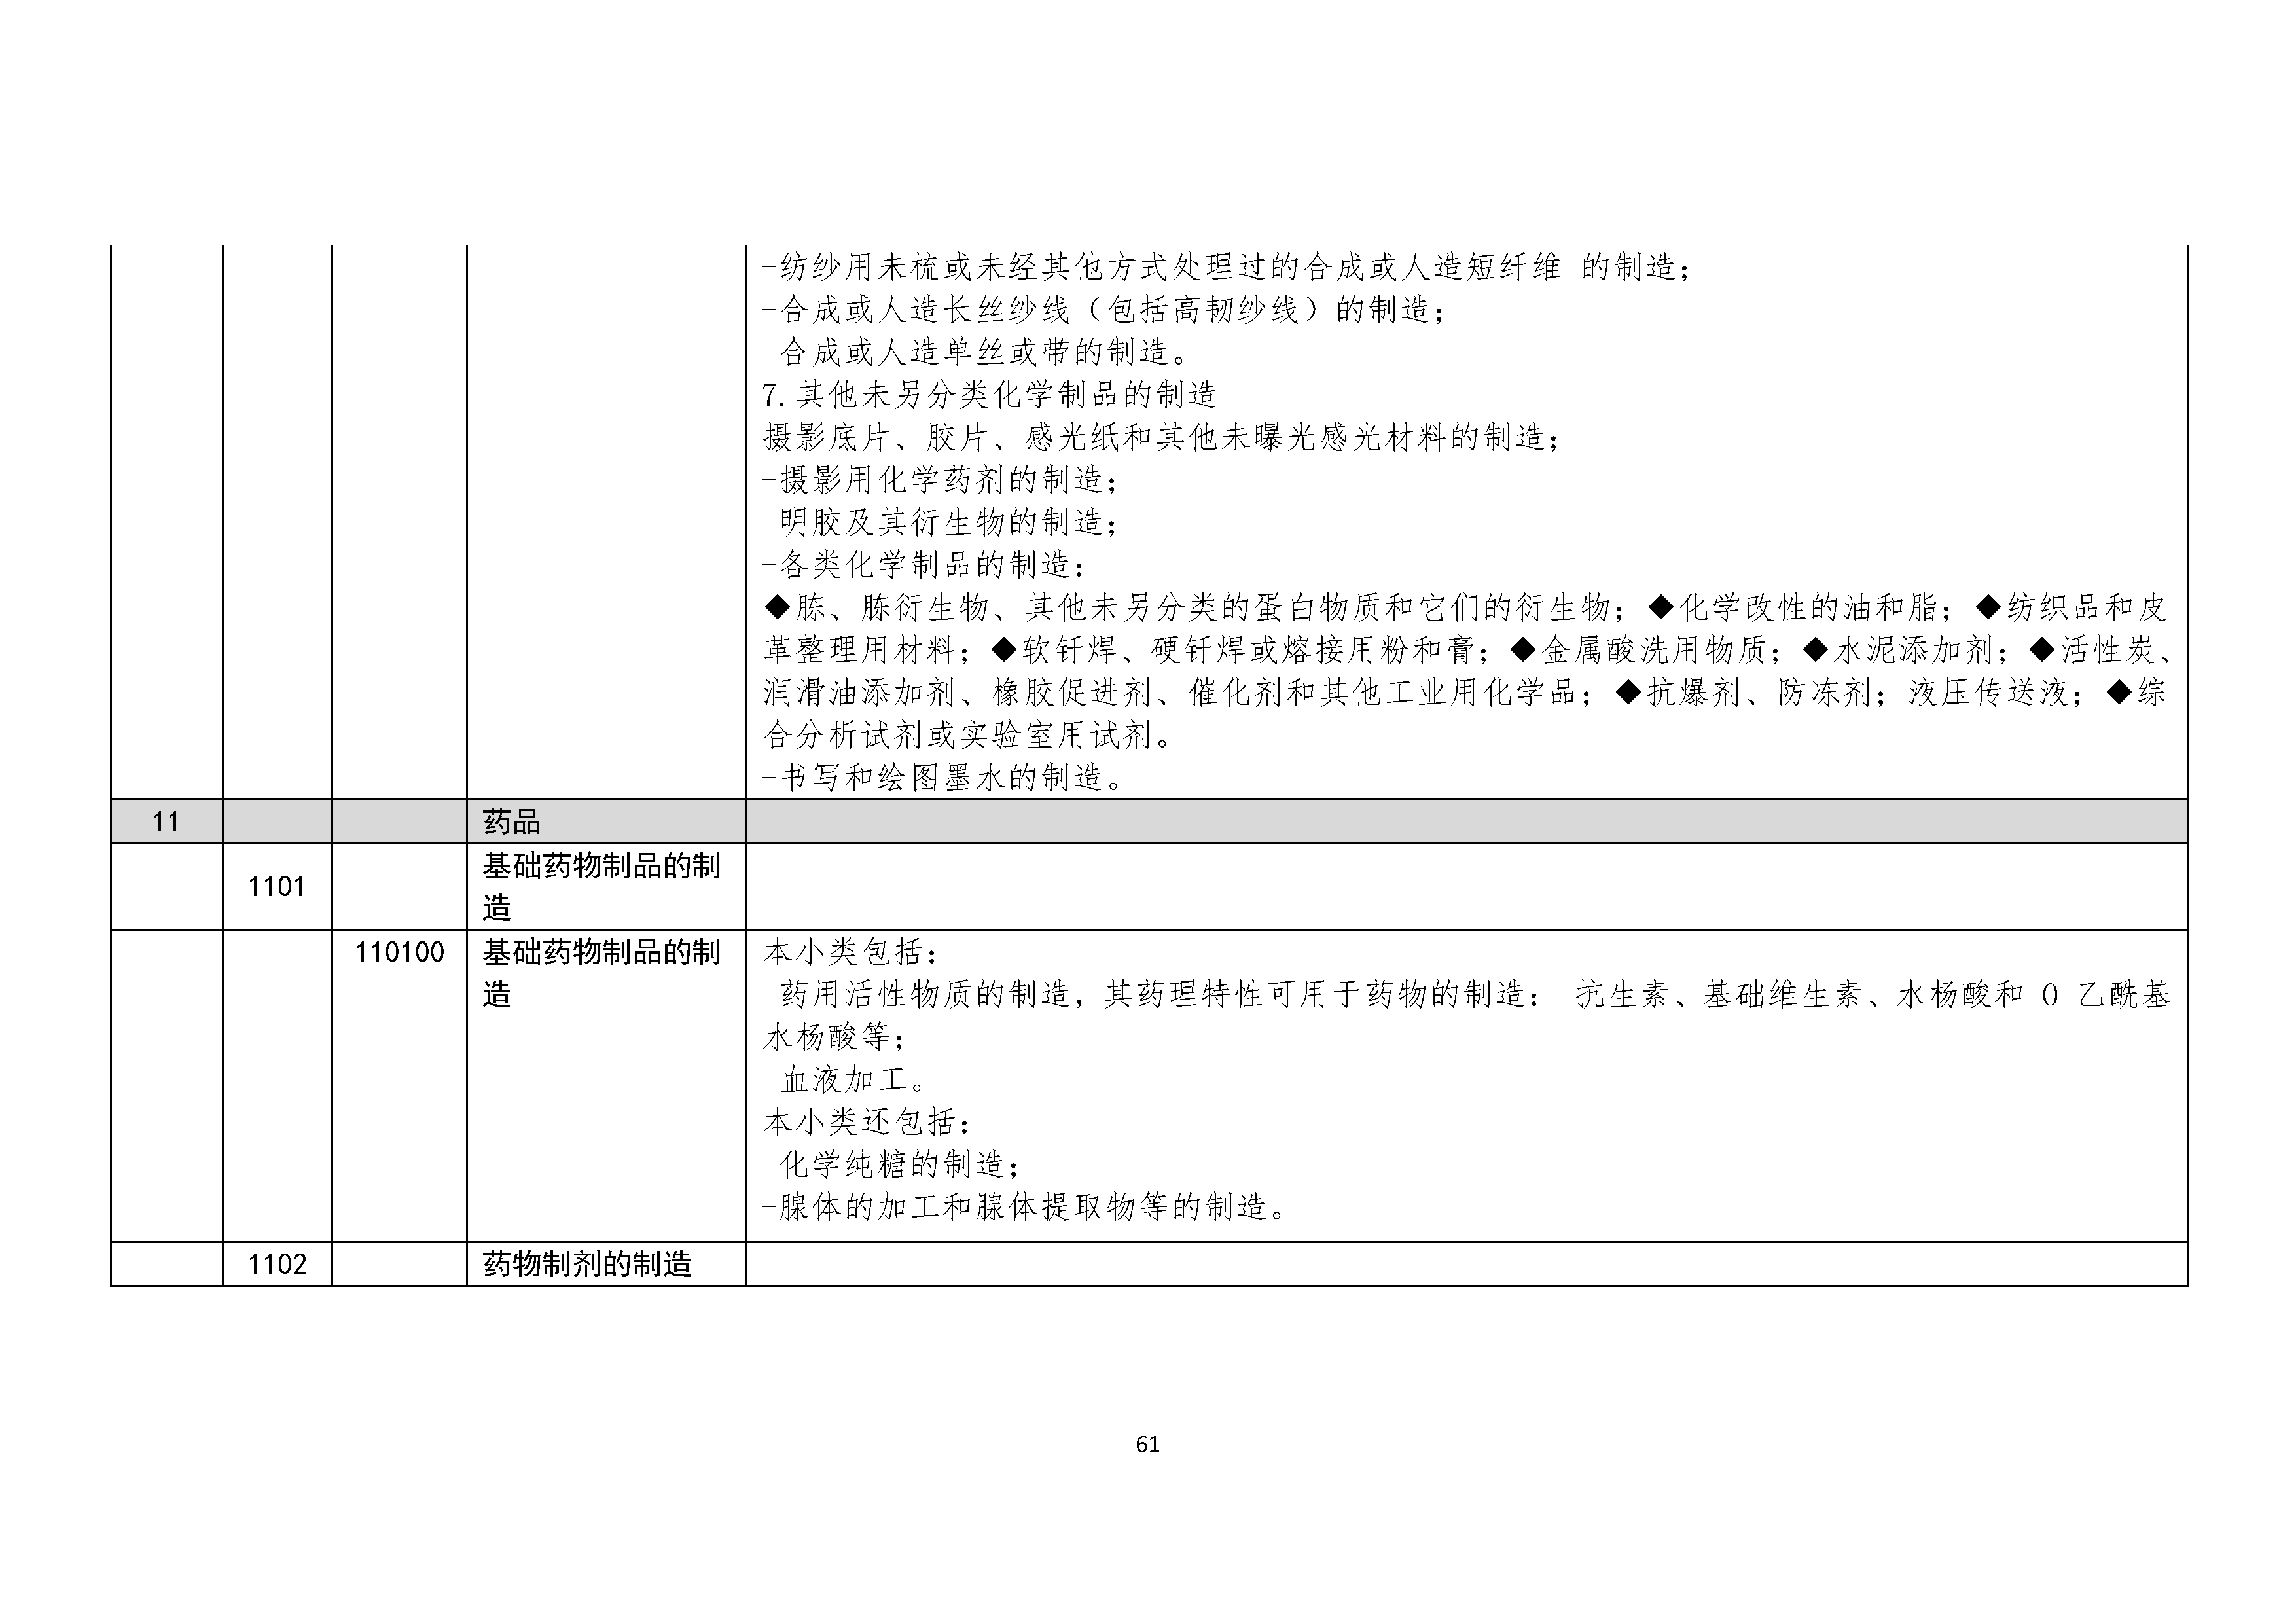 B.6《中国核能行业协会供应商评价供应商分类及产品专业范围划分规定》_页面_062.png